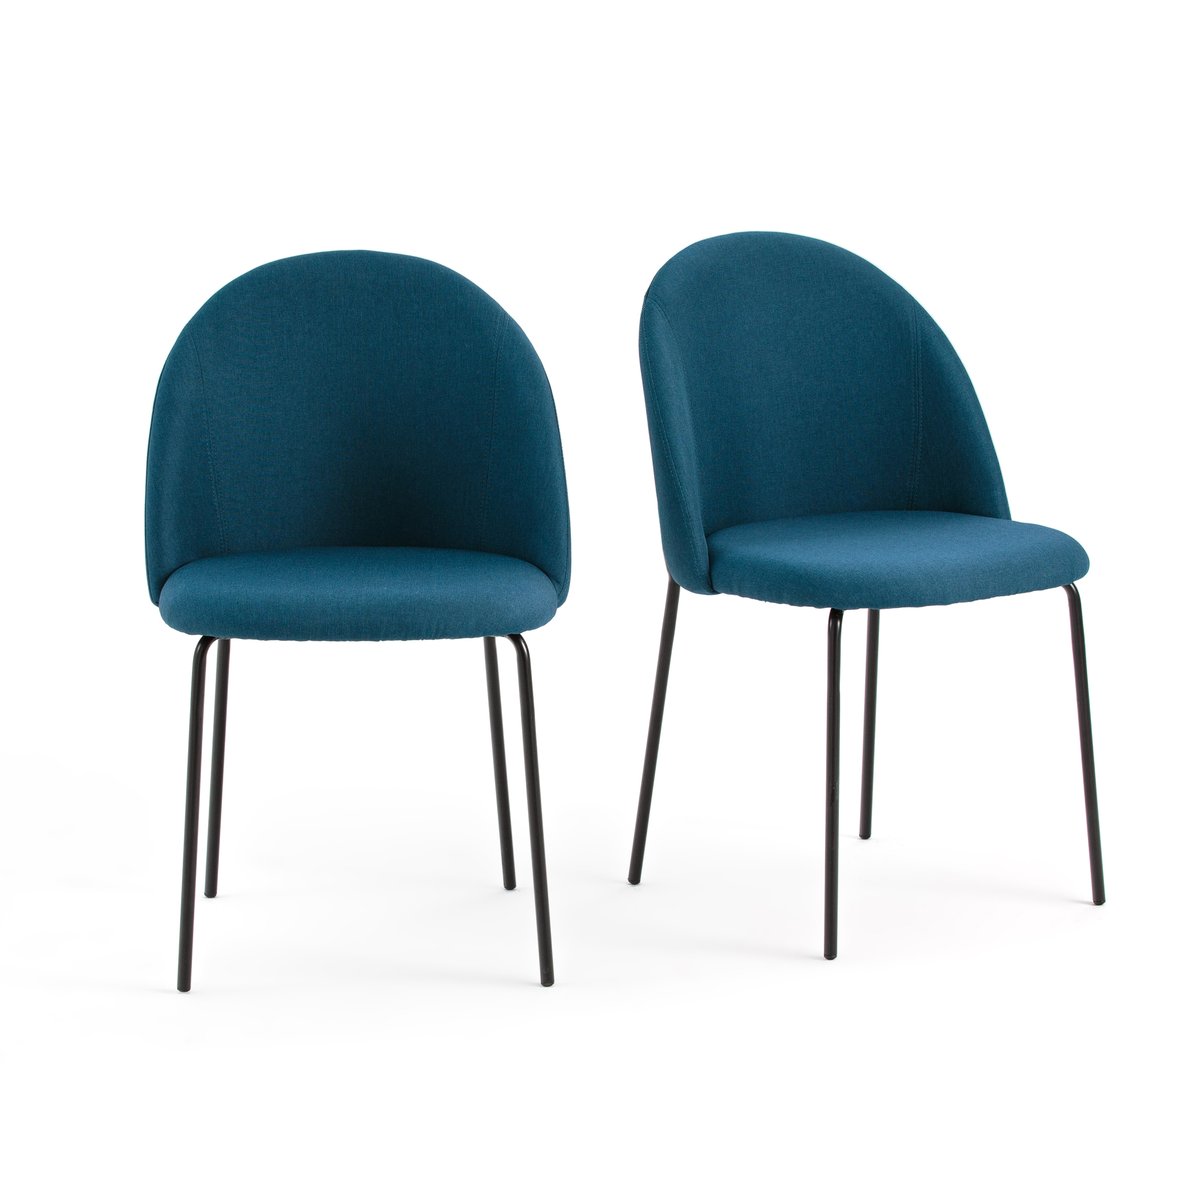 Комплект из 2 стульев NORDIE La Redoute единый размер синий цена и фото